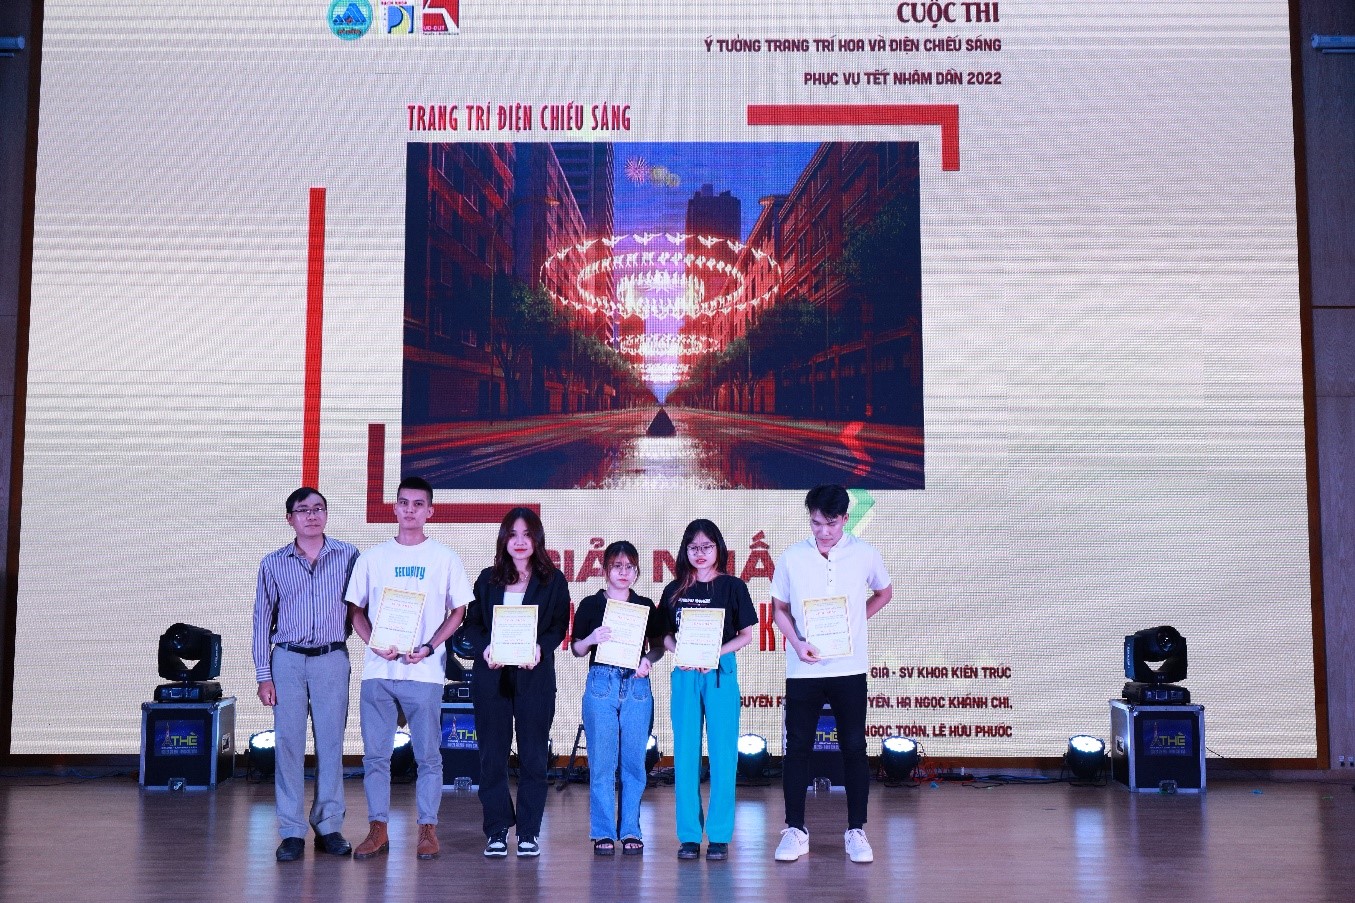 Thầy Nguyễn Khánh Tứ, Chủ tịch Công đoàn khoa Kiến trúc trao Giấy khen và phần thưởng cho các nhóm đạt giải “Ý tưởng thiết kế trang trí hoa và điện chiếu sáng phục vụ Tết Nhâm Dần năm 2022”